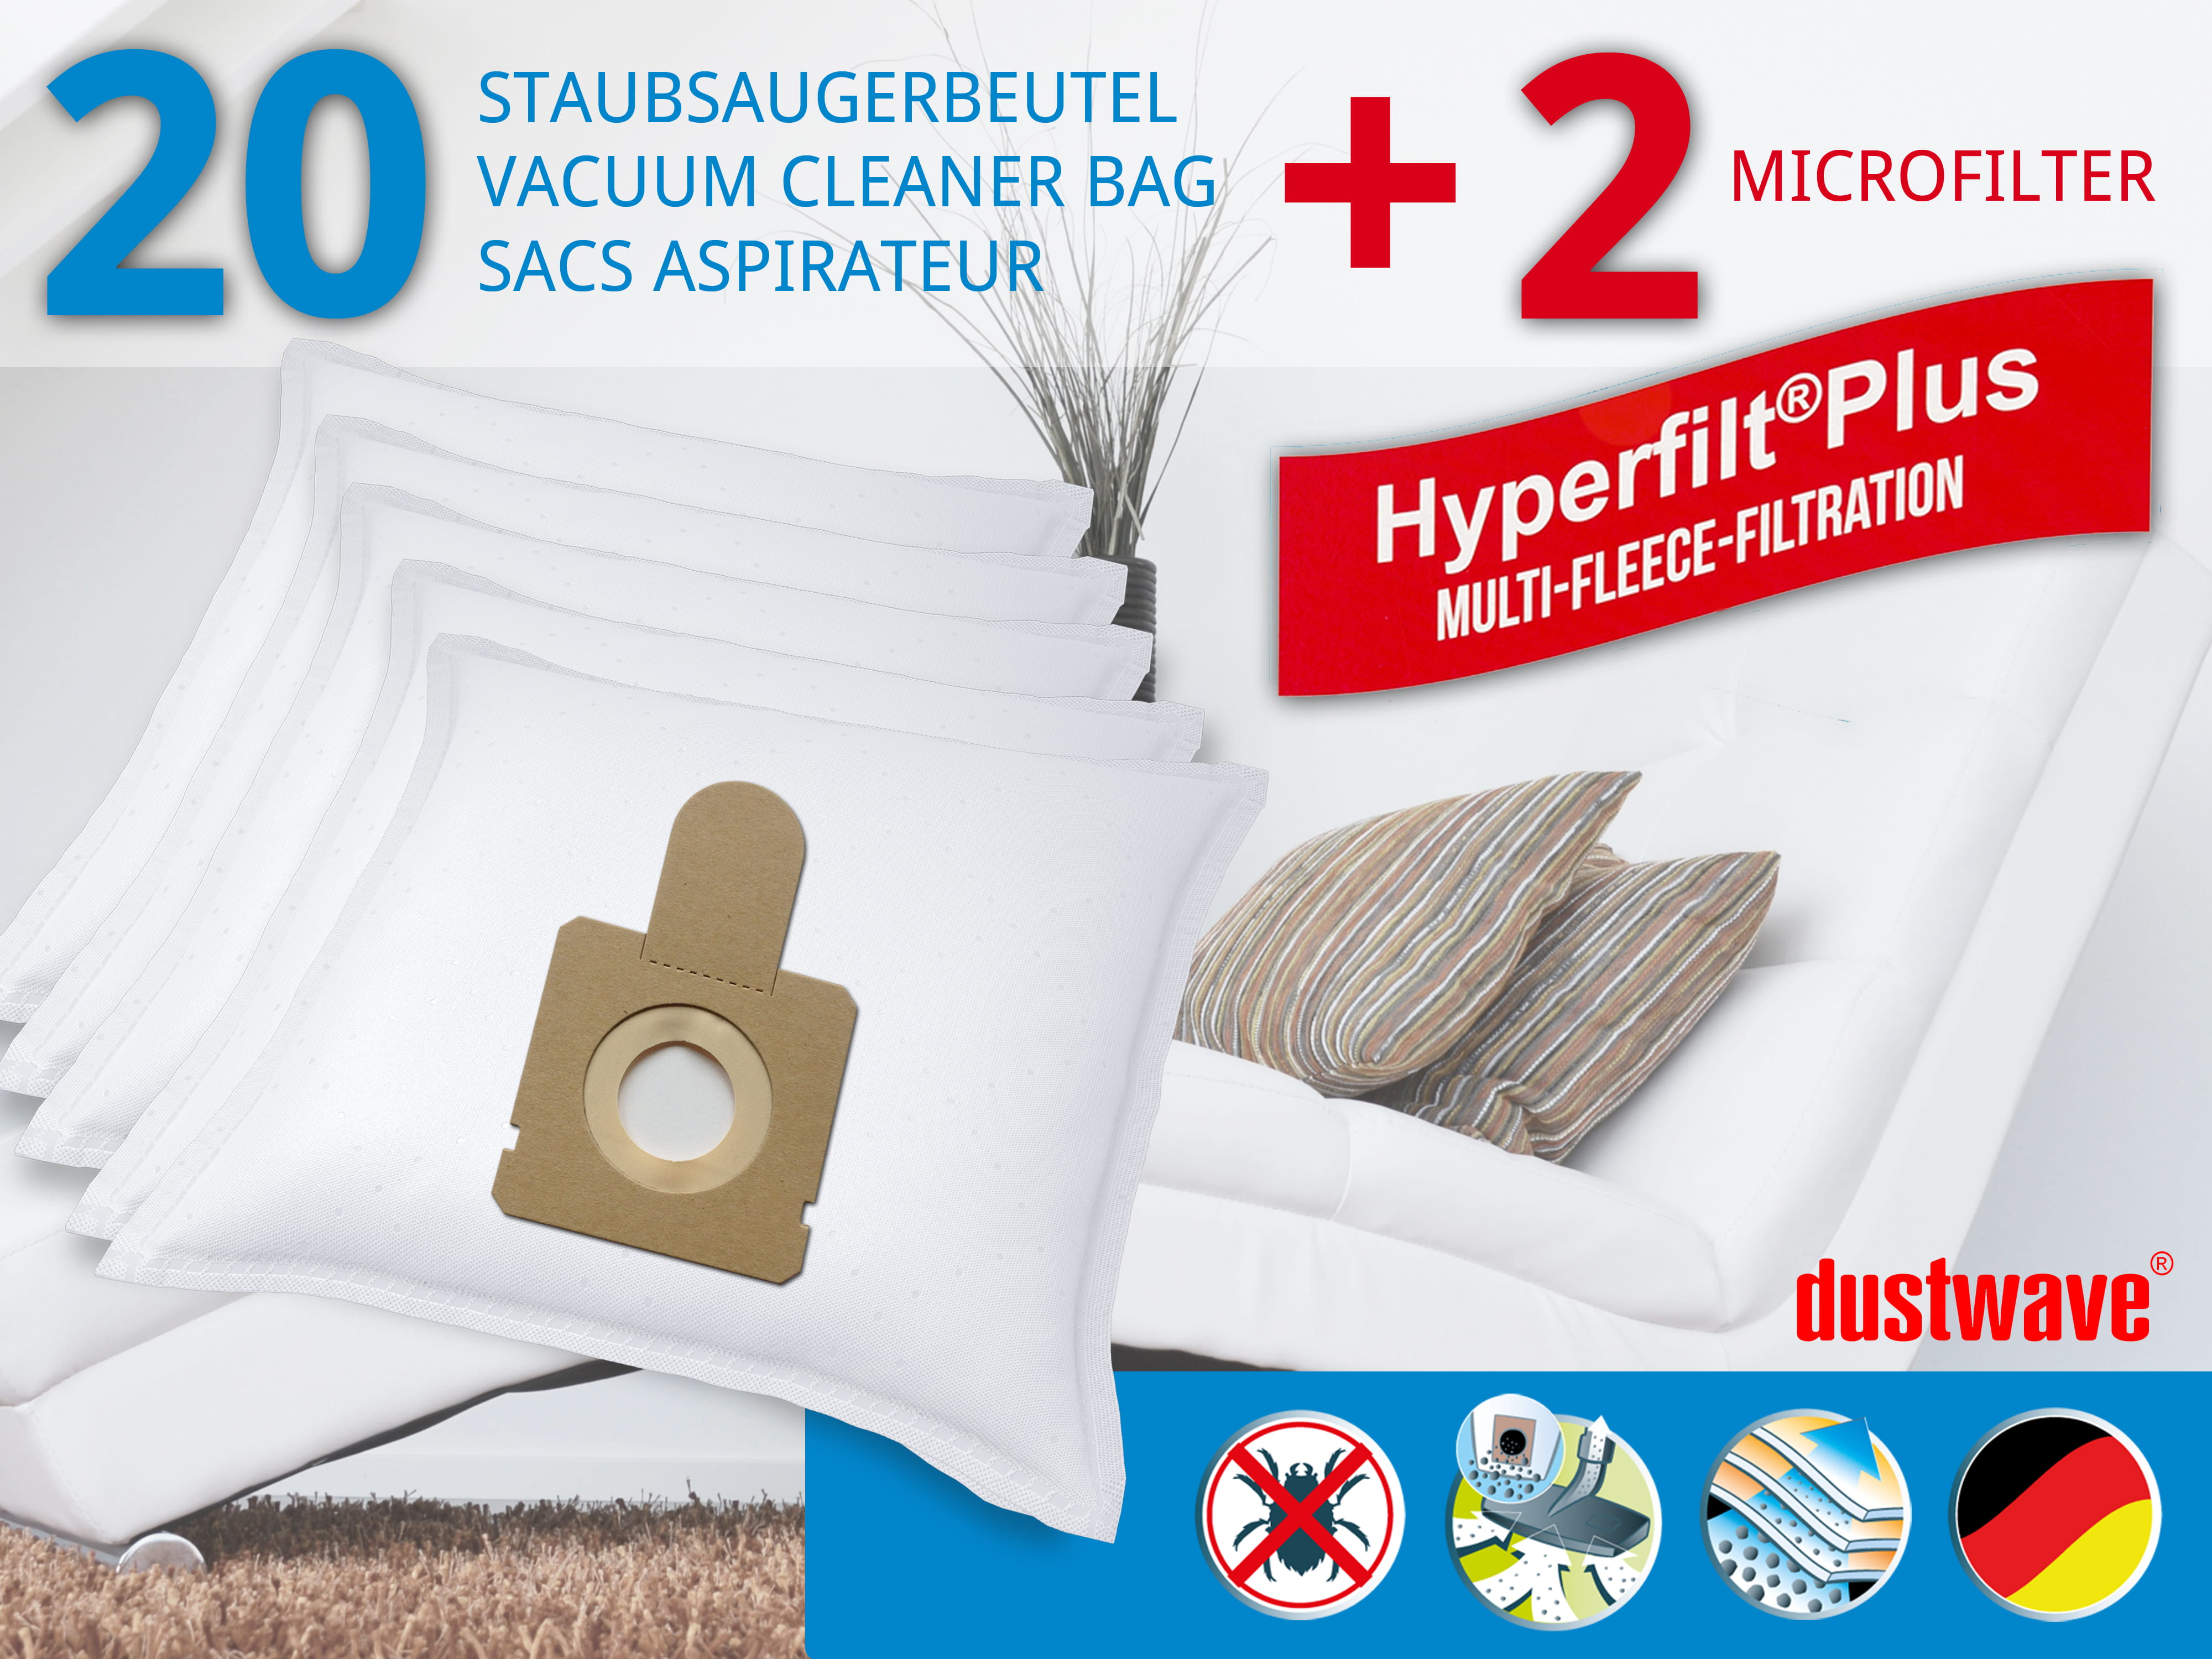 Dustwave® 20 Staubsaugerbeutel für Hoover CP70_CP40021 - hocheffizient, mehrlagiges Mikrovlies mit Hygieneverschluss - Made in Germany